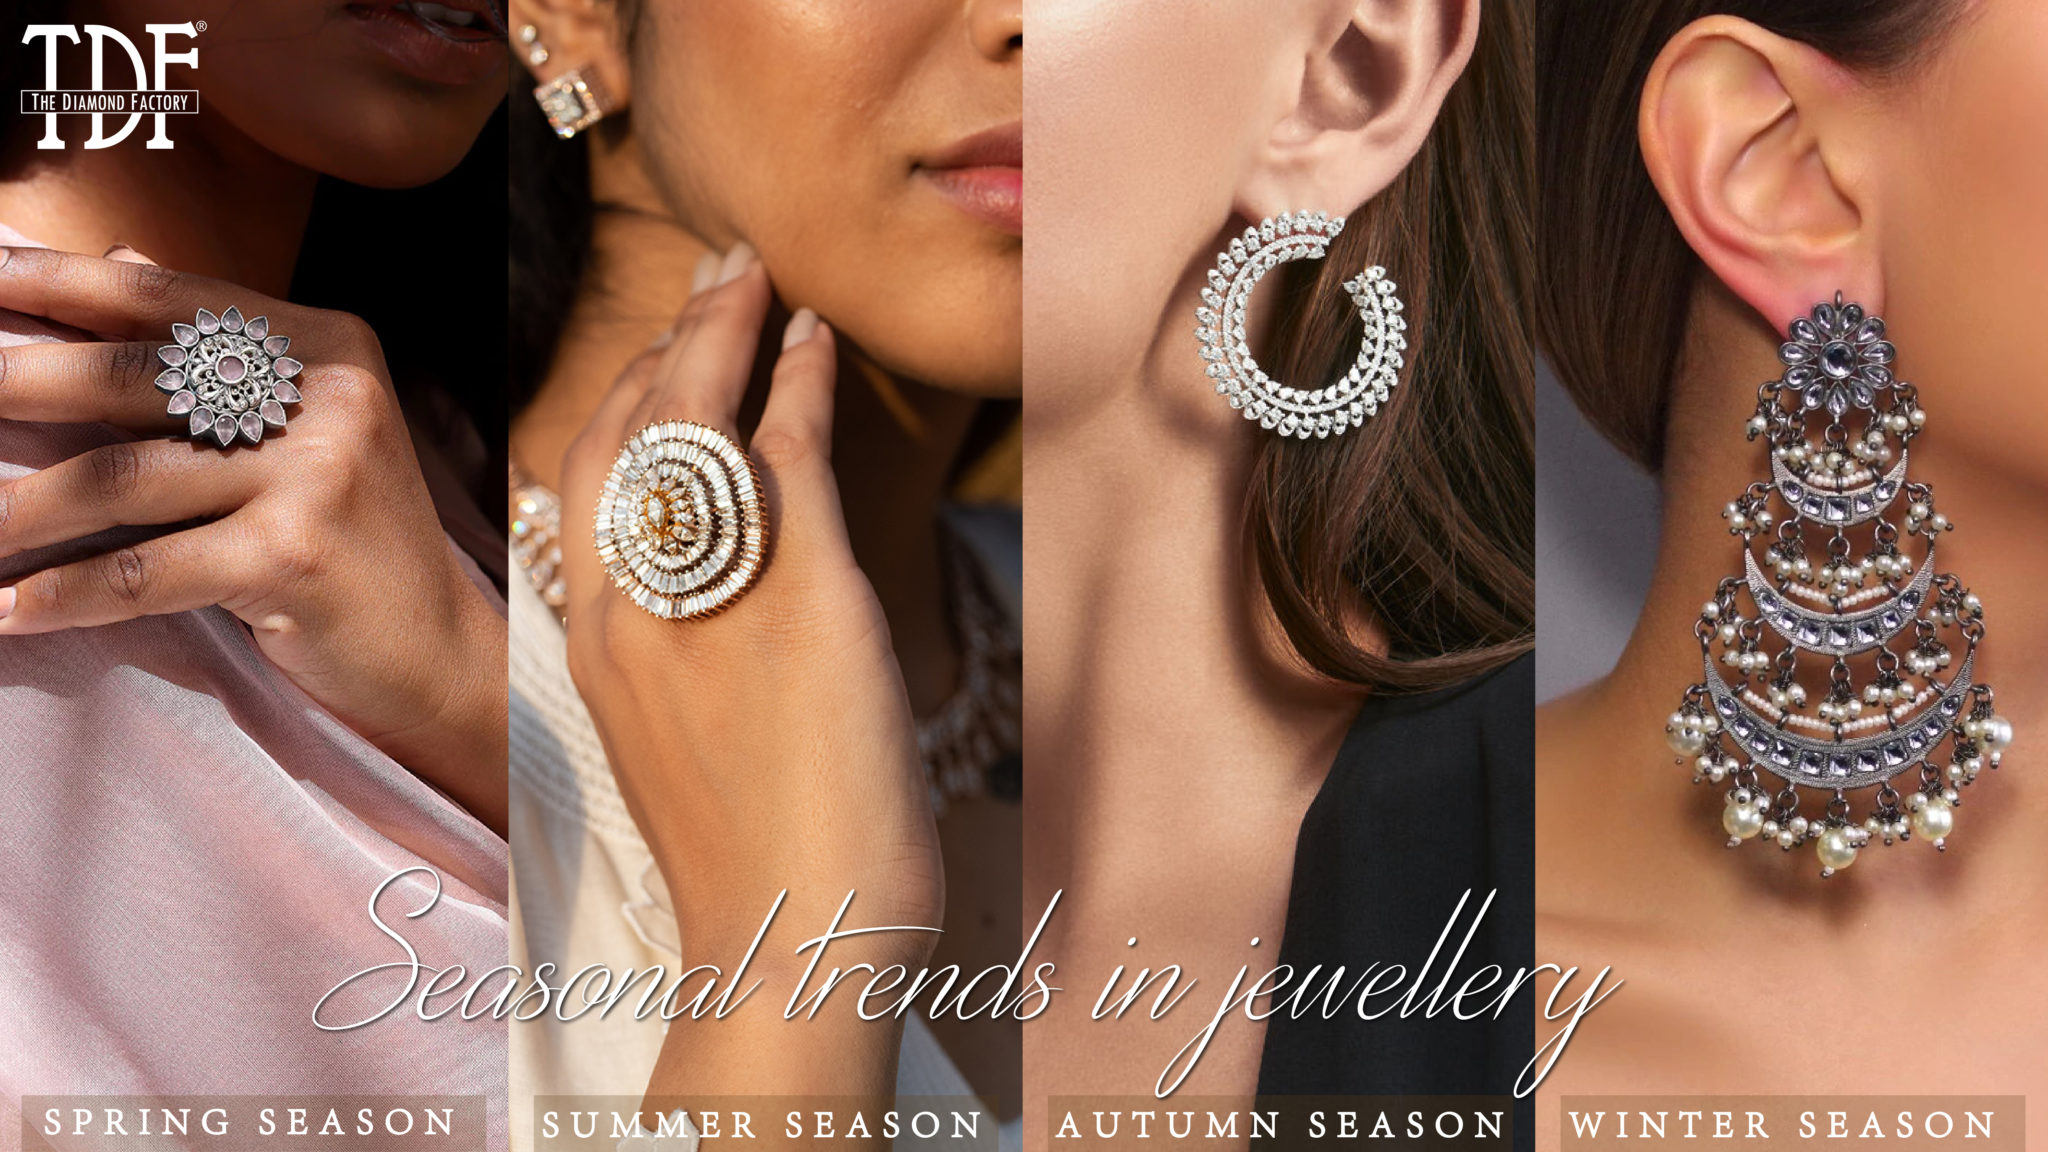 Seasonal trends in jewellery